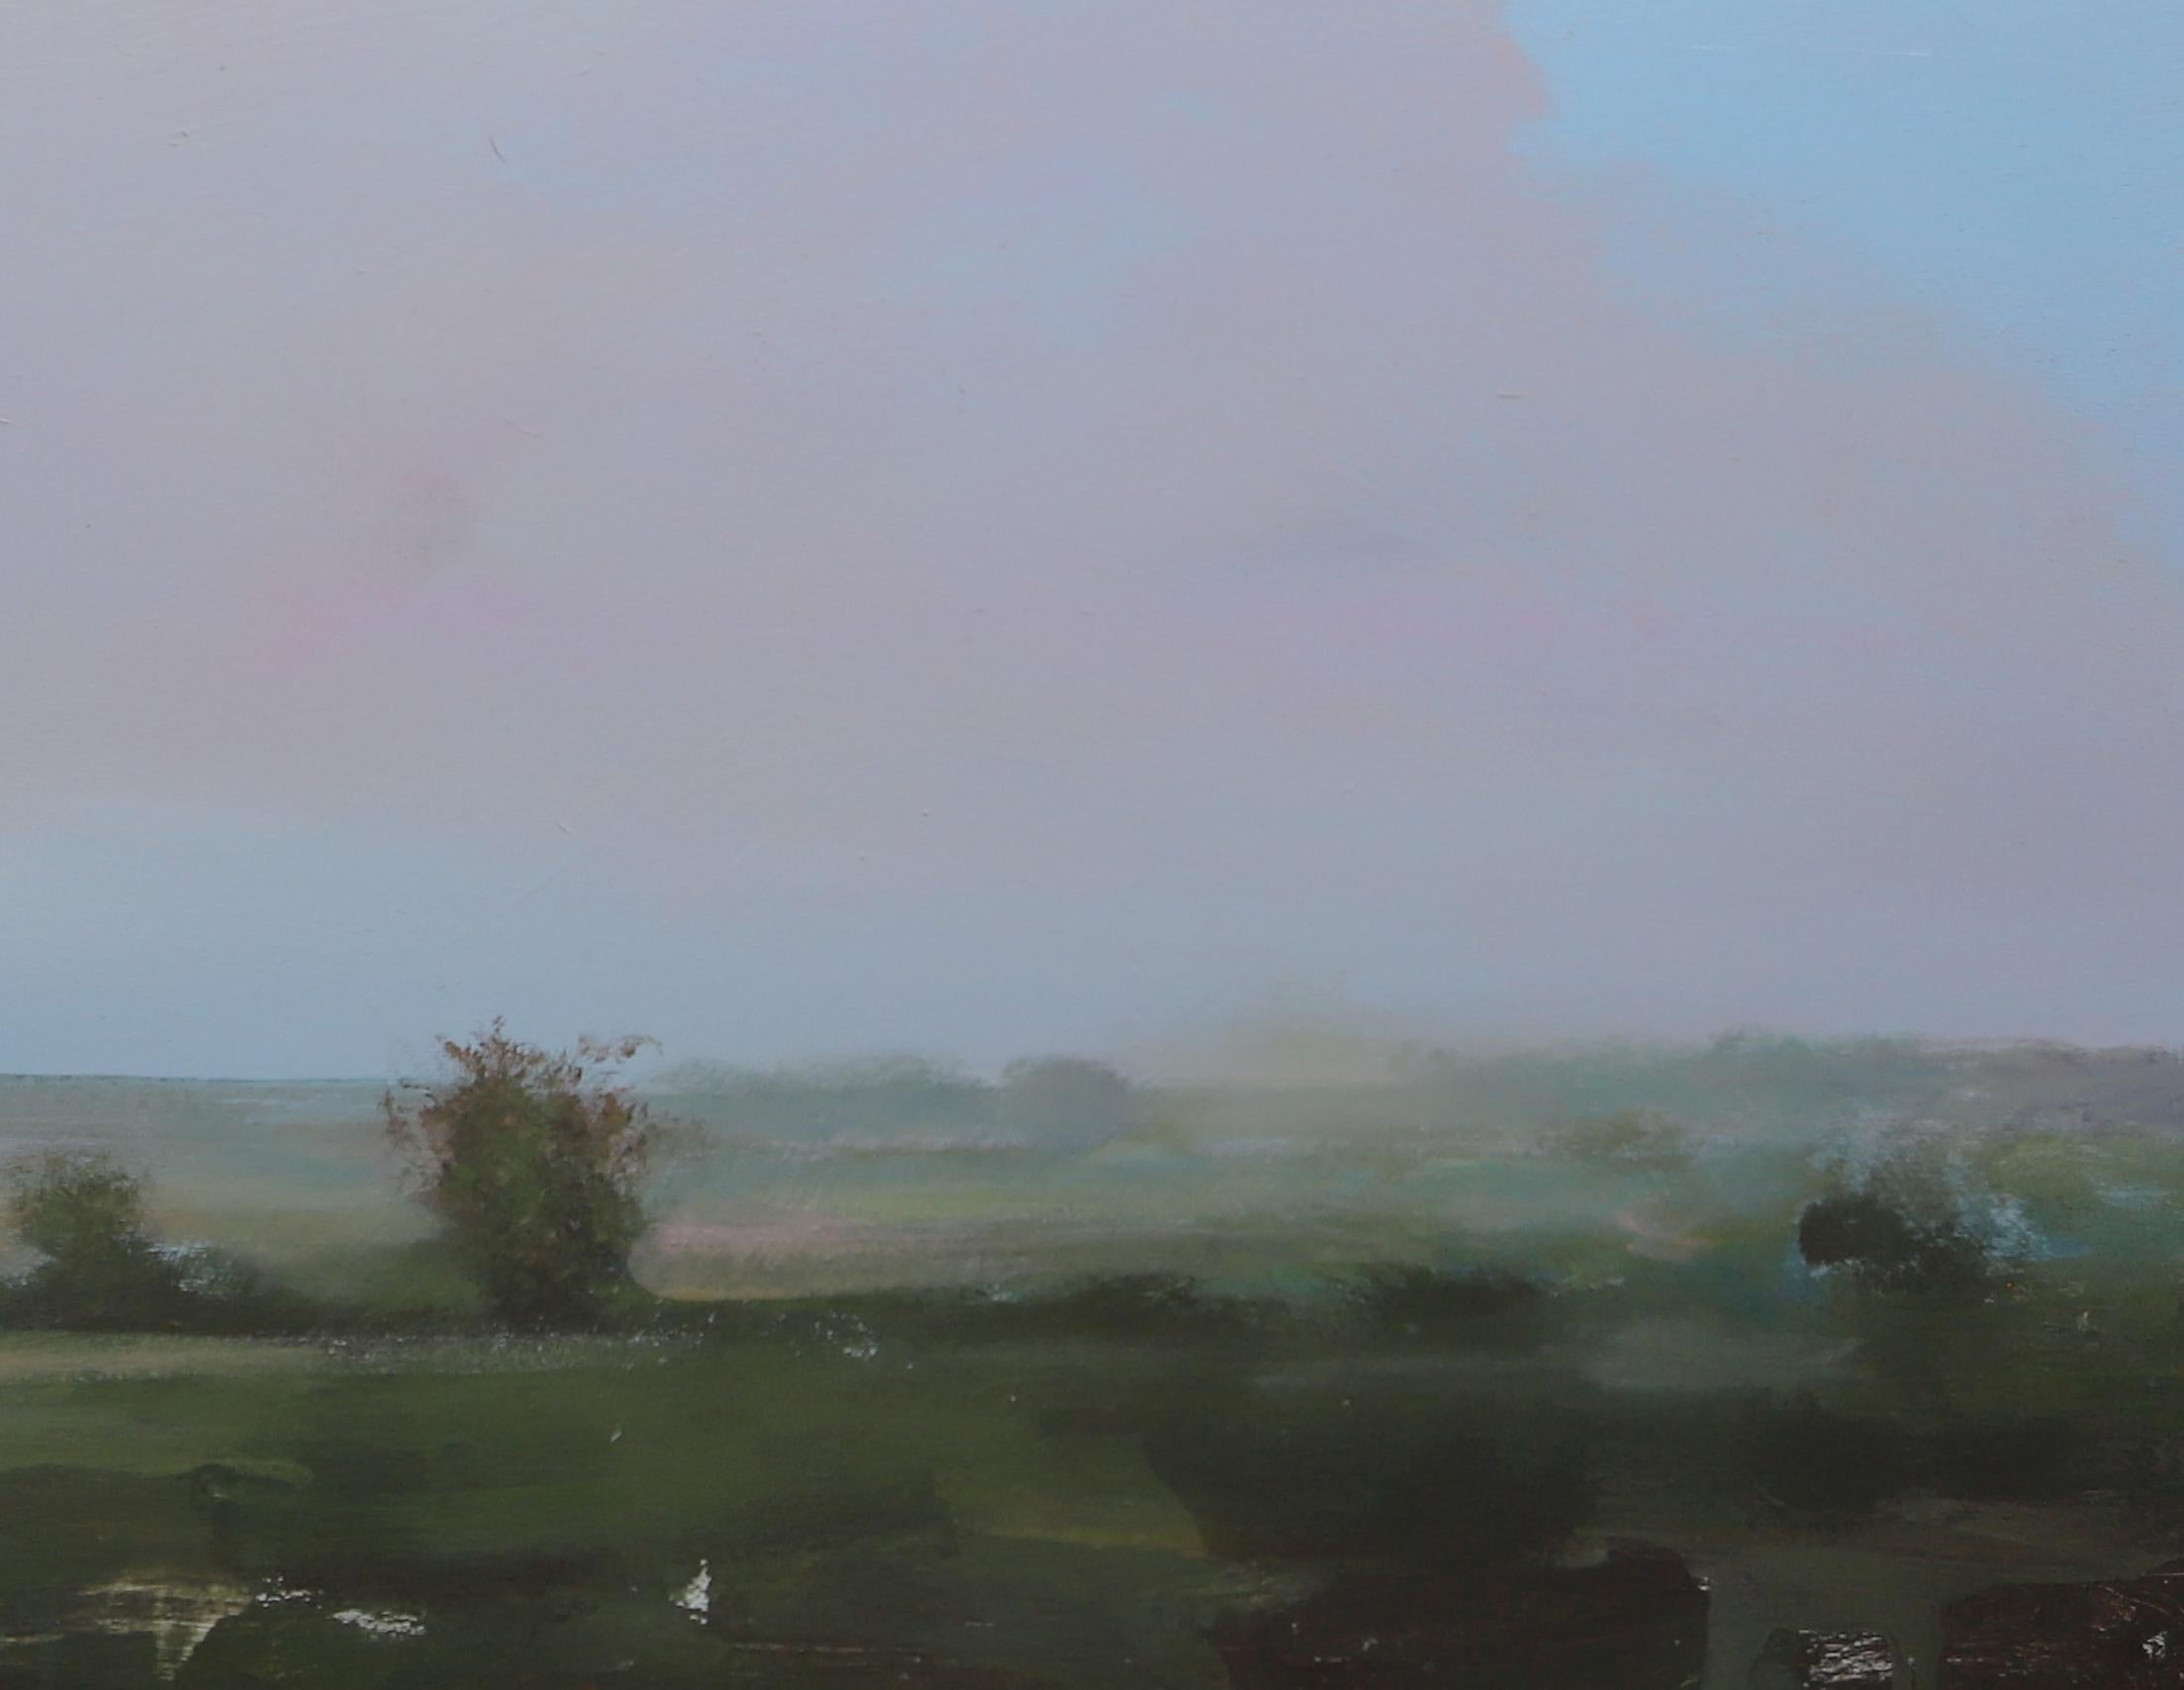 L'artiste canadien Peter Hoffer (1965) est surtout connu pour ses peintures de paysages. Son style a également été comparé aux paysages idéalistes du paysagiste du XIXe siècle John Constable.

Après un voyage à Paris, Hoffer a commencé à